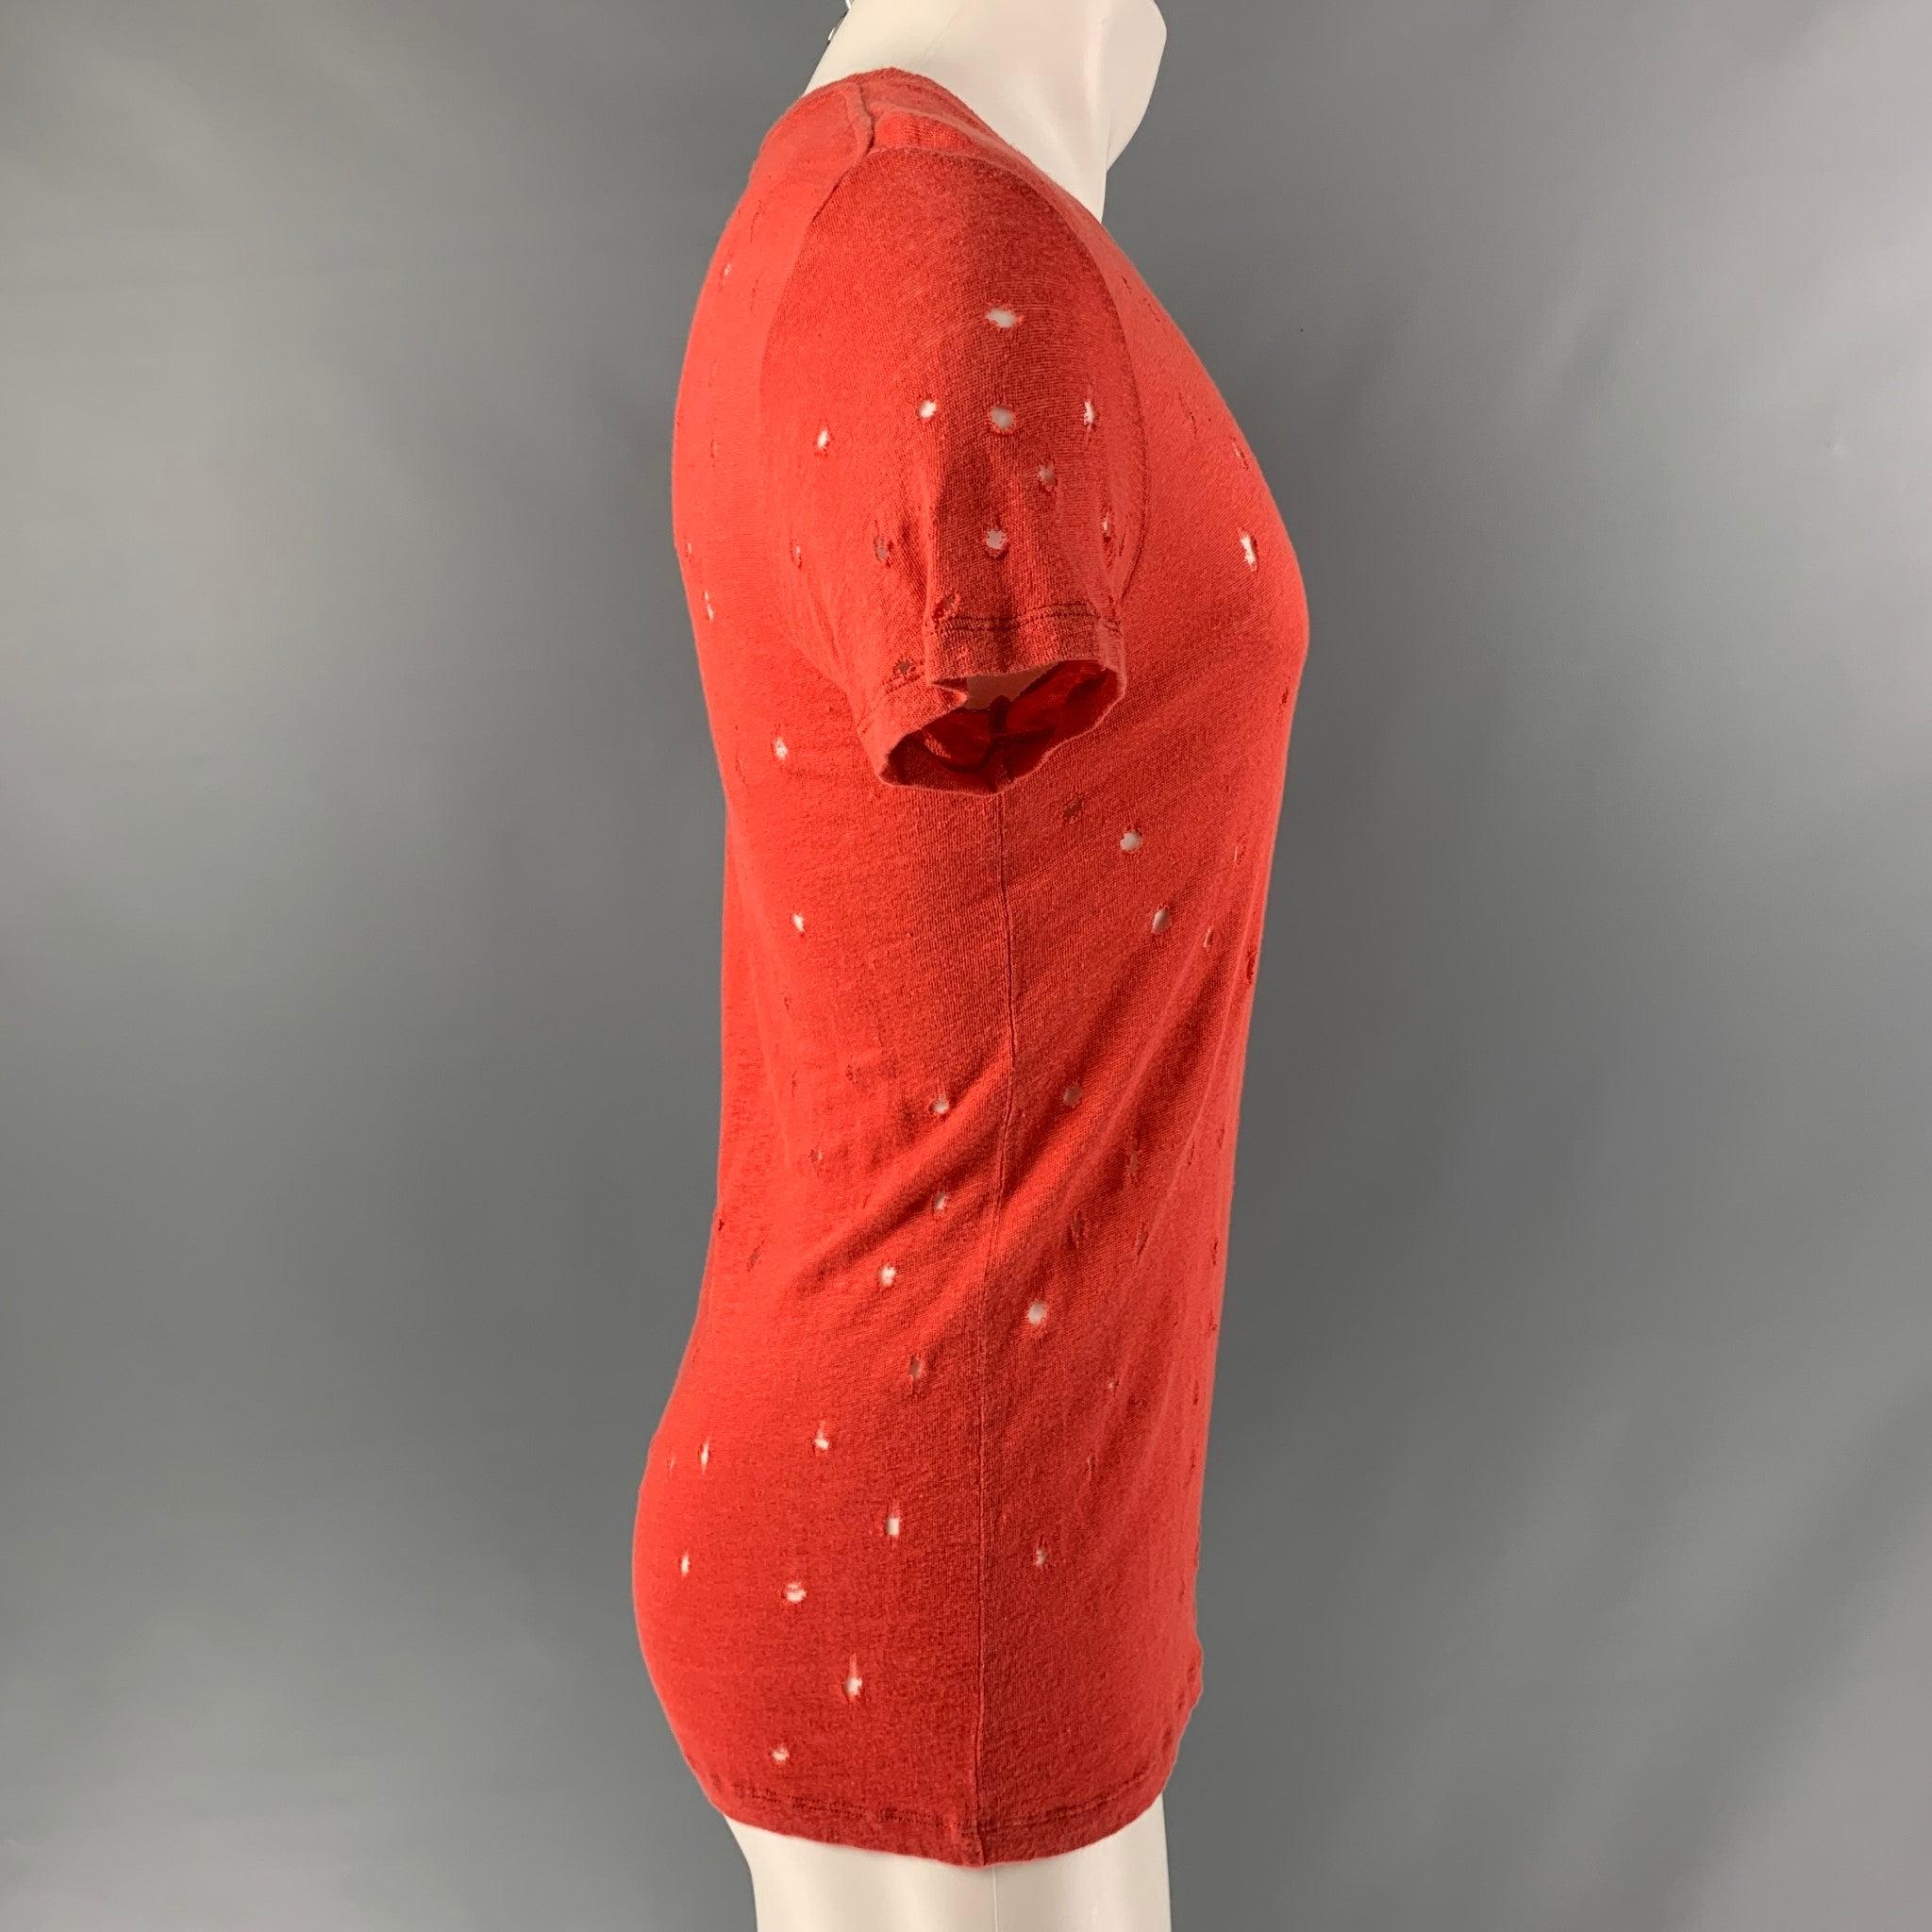 Le t-shirt 'Clay' d'Iro est présenté dans un lin rouge avec des détails en relief et une encolure ras du cou. Fabriqué au Portugal. Très bon état d'origine. 

Marqué :   XS 

Mesures : 
 
Épaule : 18 pouces Poitrine : 38 pouces Manches : 8 pouces